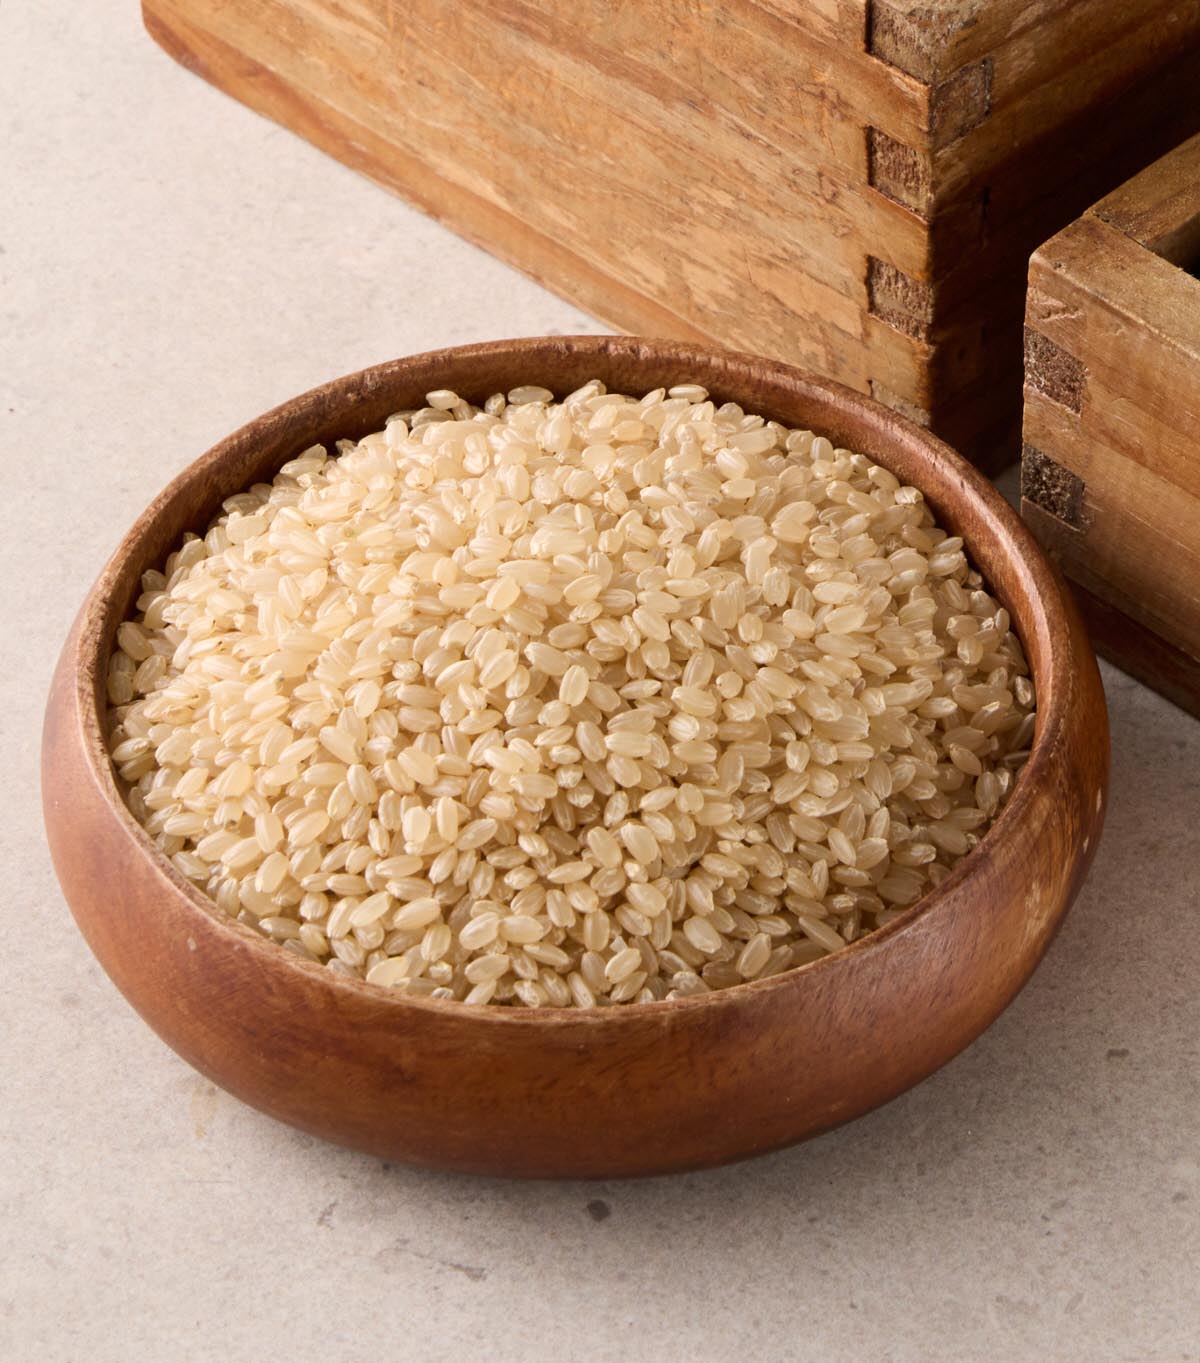 포를 깔고 그릇에 현미쌀이 가득 담아져 있다.